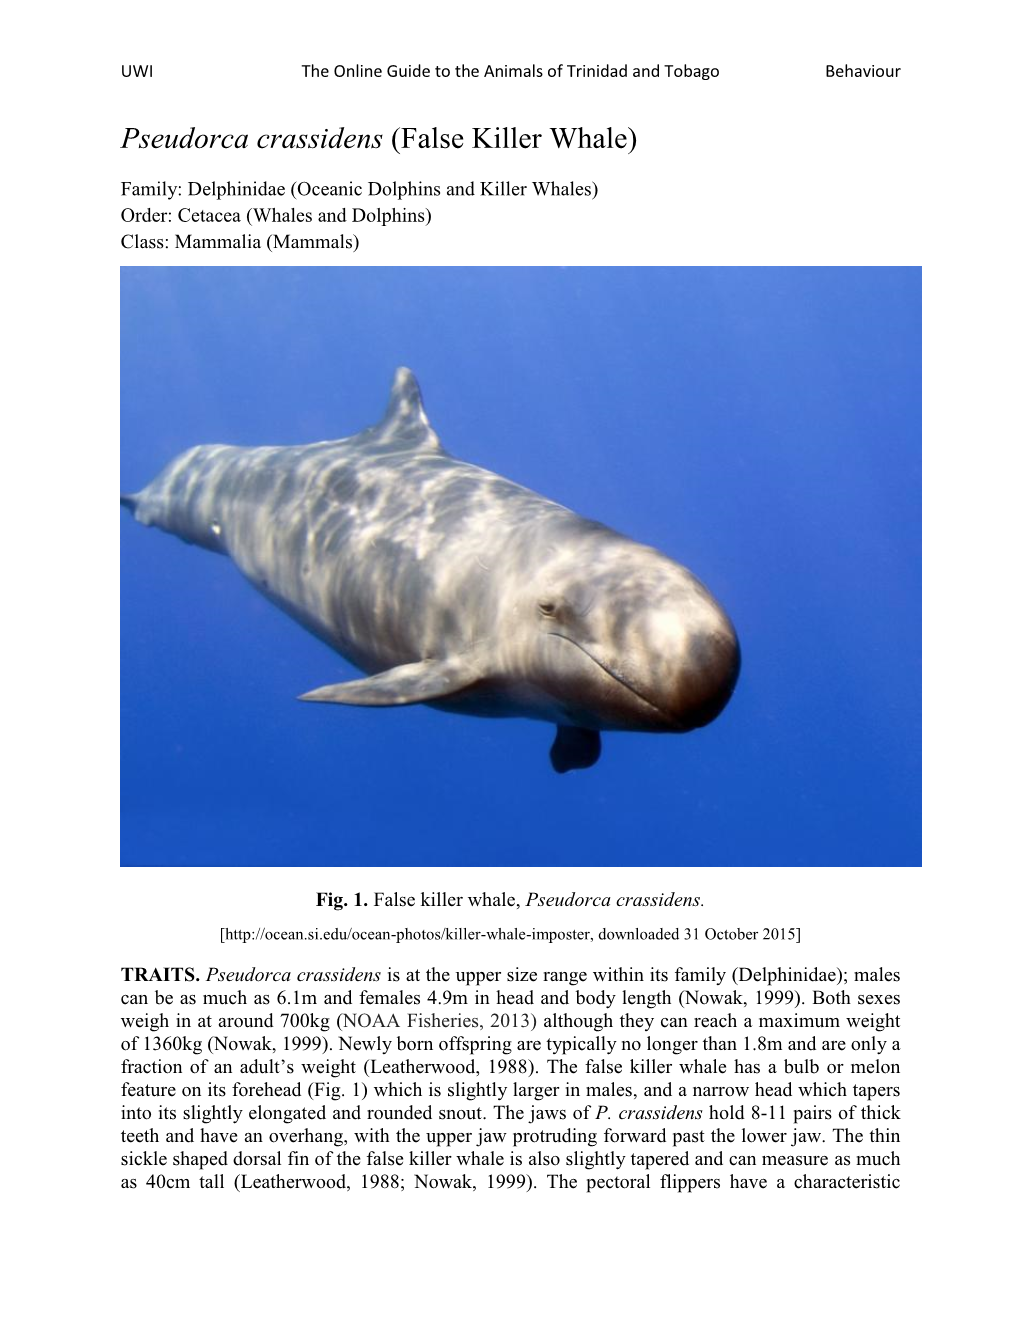 Pseudorca Crassidens (False Killer Whale)